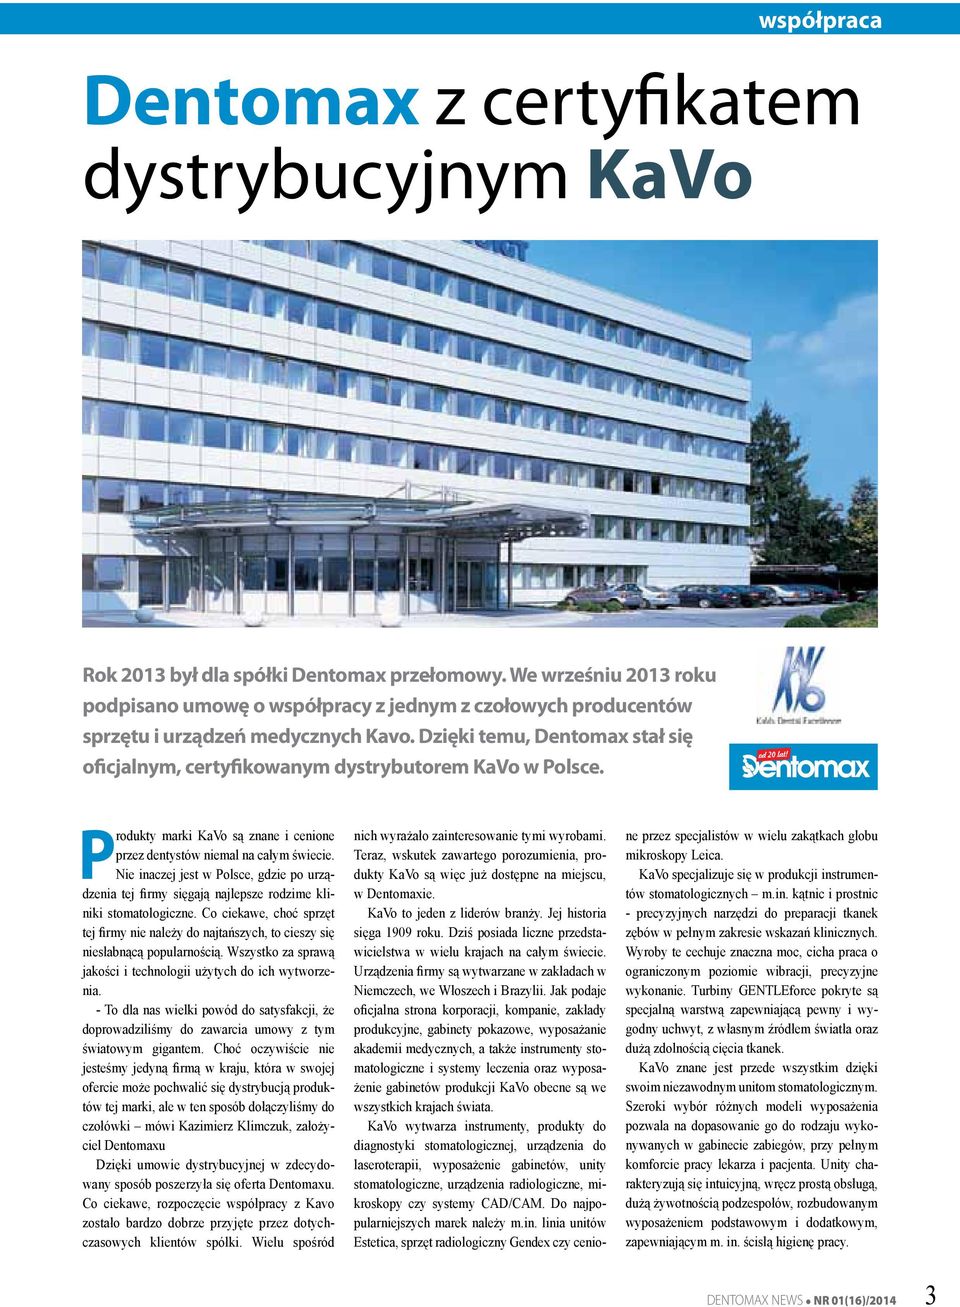 Dzięki temu, Dentomax stał się oficjalnym, certyfikowanym dystrybutorem KaVo w Polsce. Produkty marki KaVo są znane i cenione przez dentystów niemal na całym świecie.